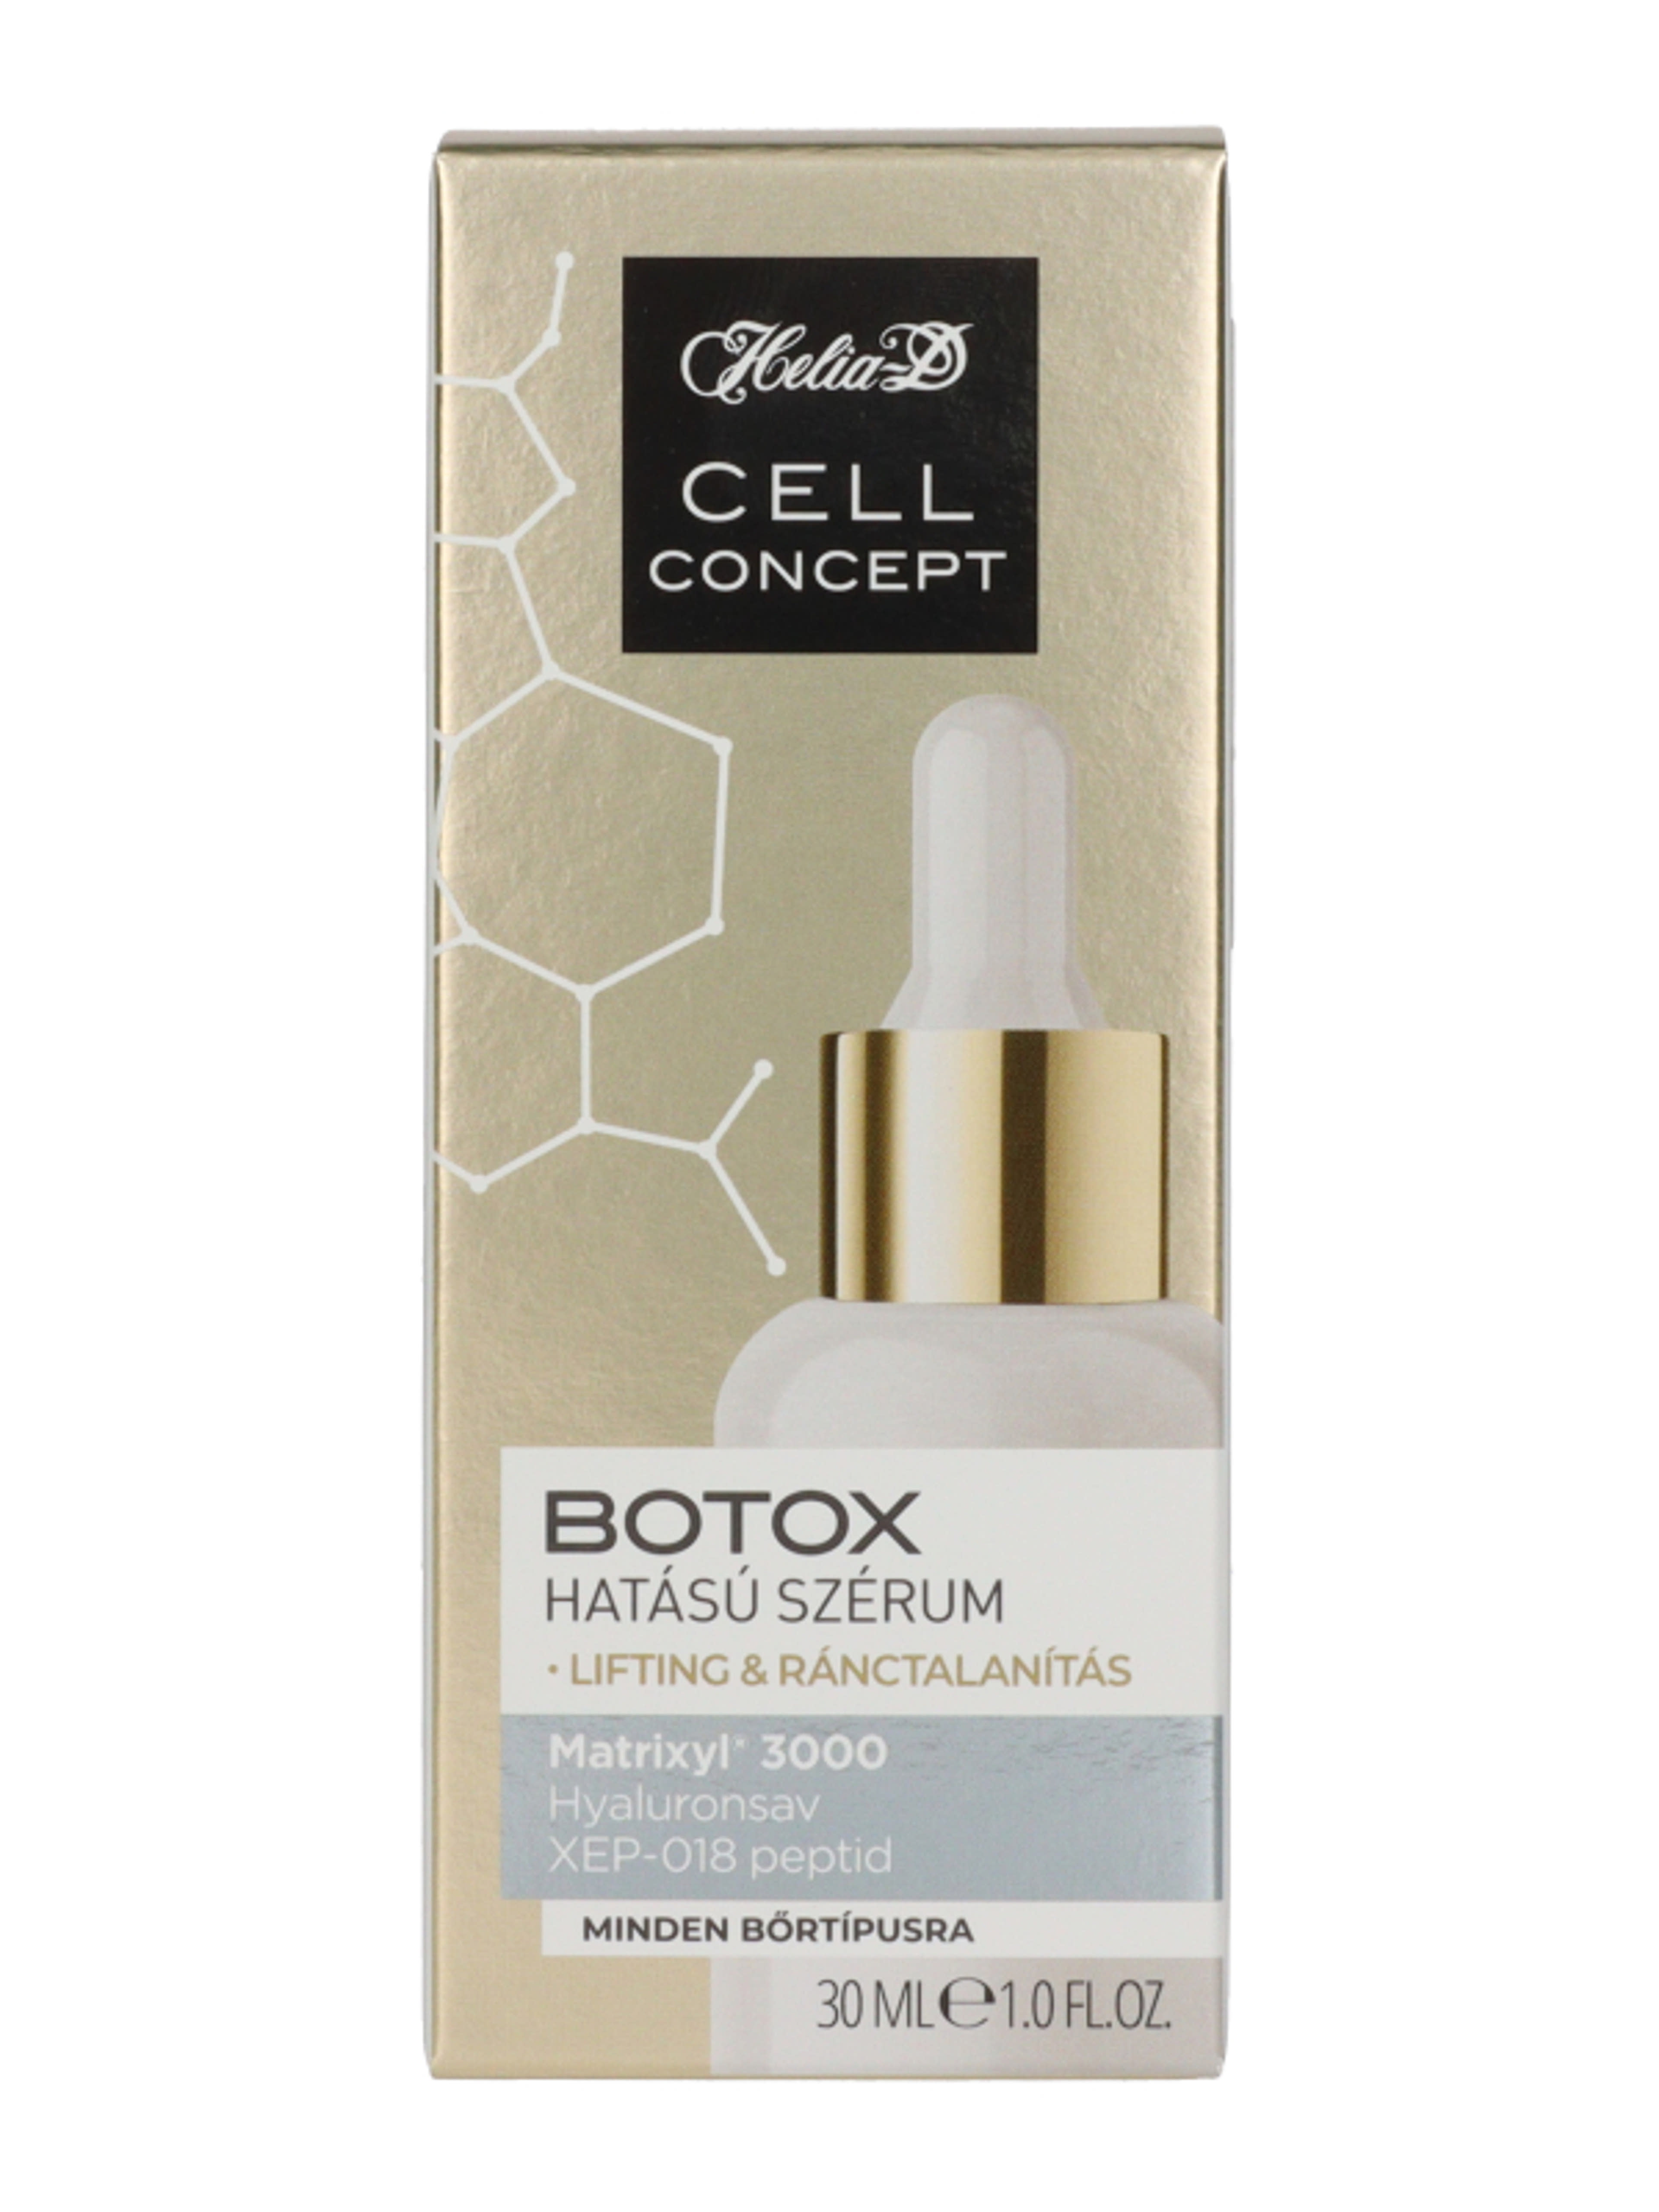 Helia-D Cell Concept Botox hatású szérum - 30 ml-3